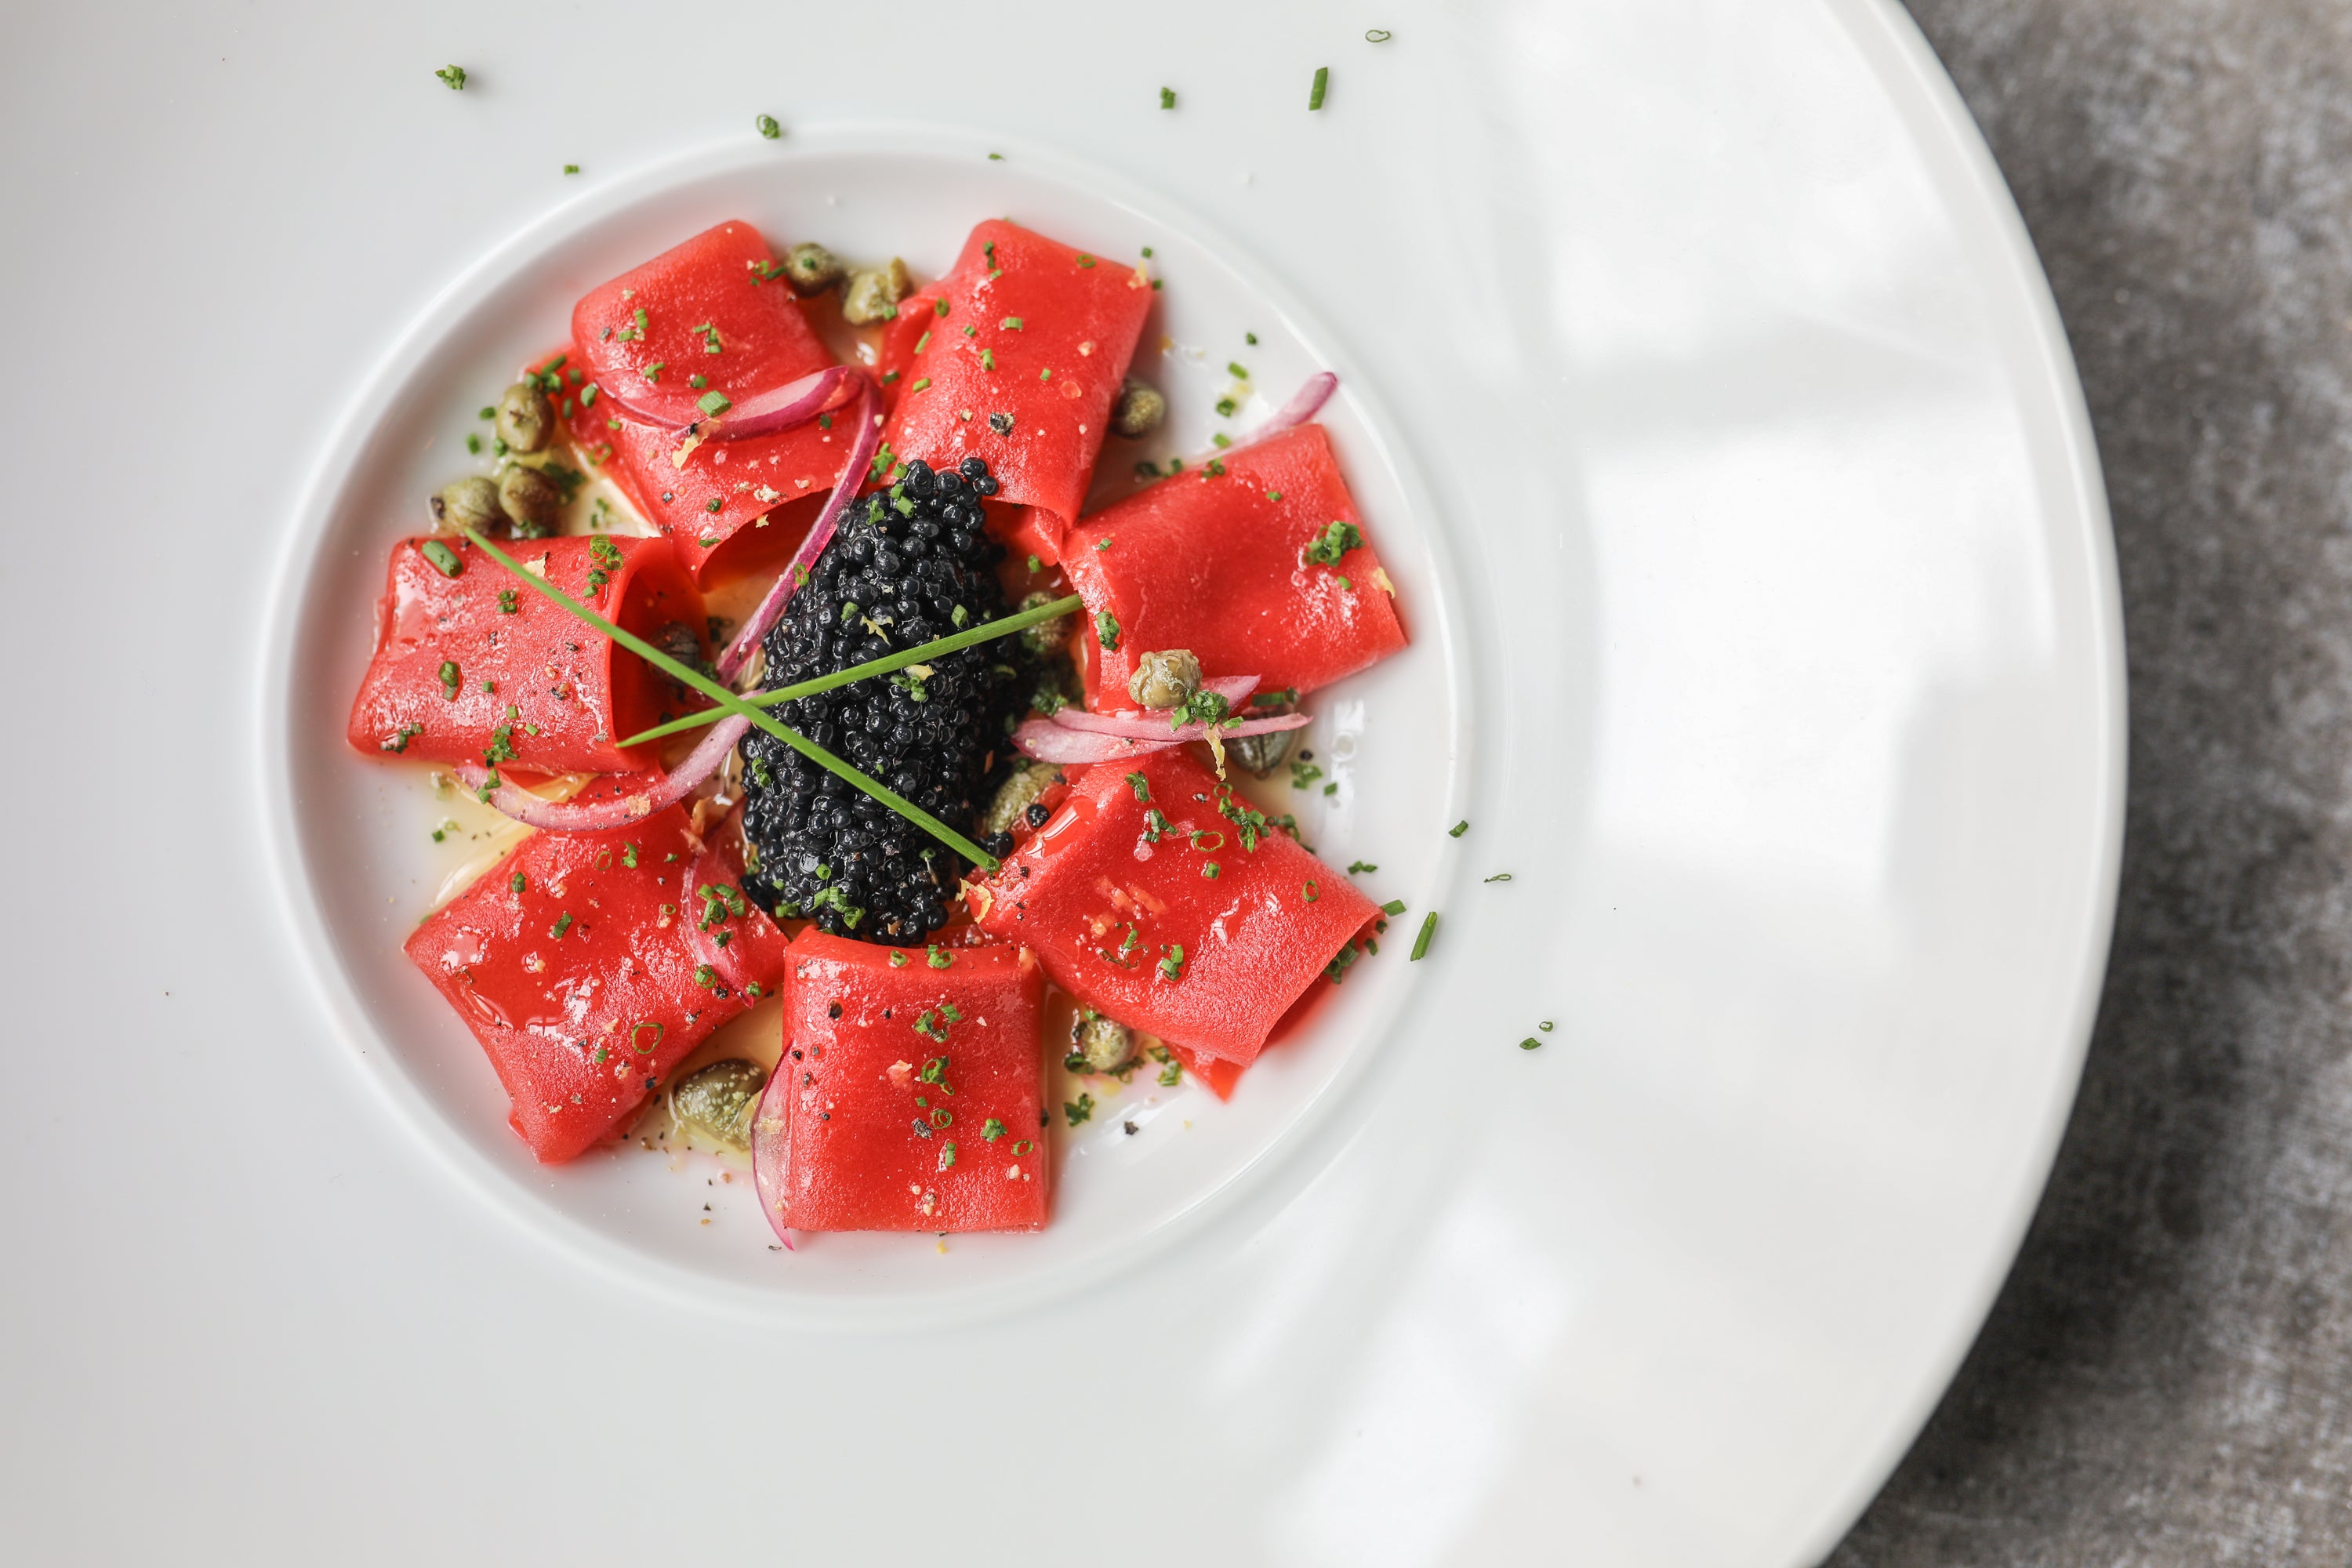 New York'ta Coletta'da kırmızı soğan turşusu, kapari, karabiber ve karadeniz yosunu havyarı ile servis edilen “ton balığı” crudo.  Ton balığı ürünü Current Foods'a aittir. 